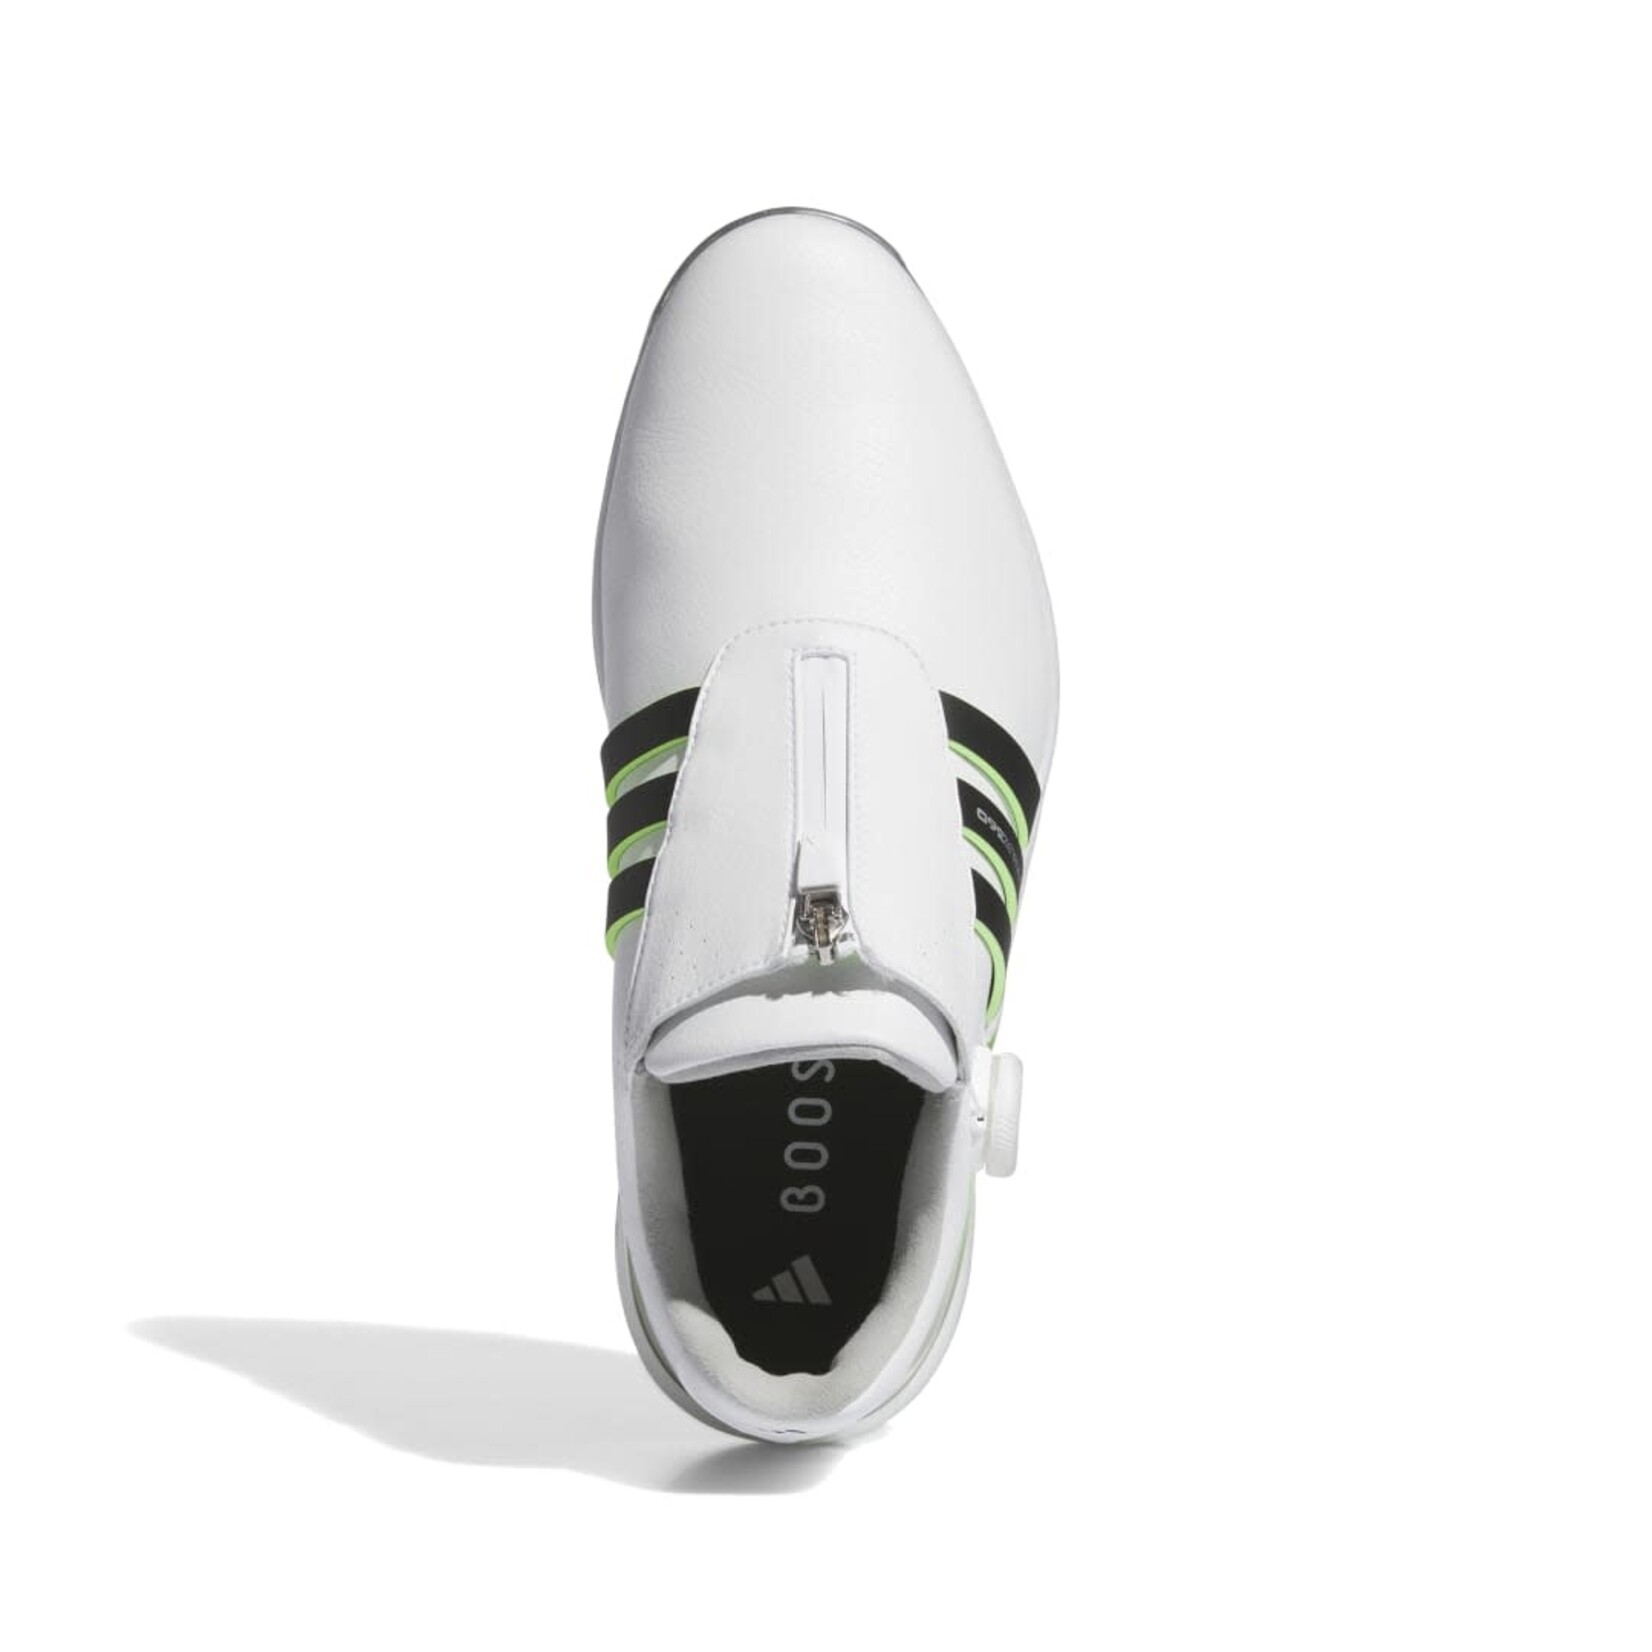 Adidas Adidas Tour360 24 BOA - White/Black/Green Spark WIDE